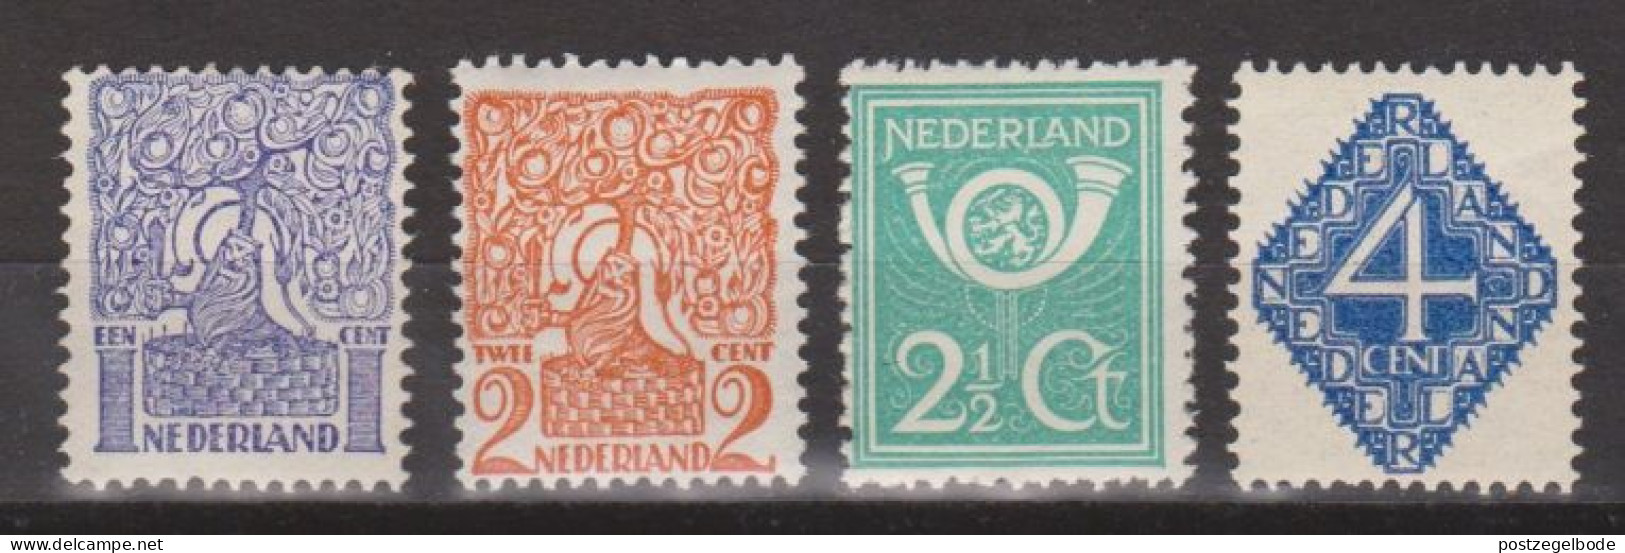 NVPH Nederland Netherlands Pays Bas Niederlande Holanda 110 111 112 113 MNH/postfris ; Diverse Voorstellingen 1923 - Unused Stamps